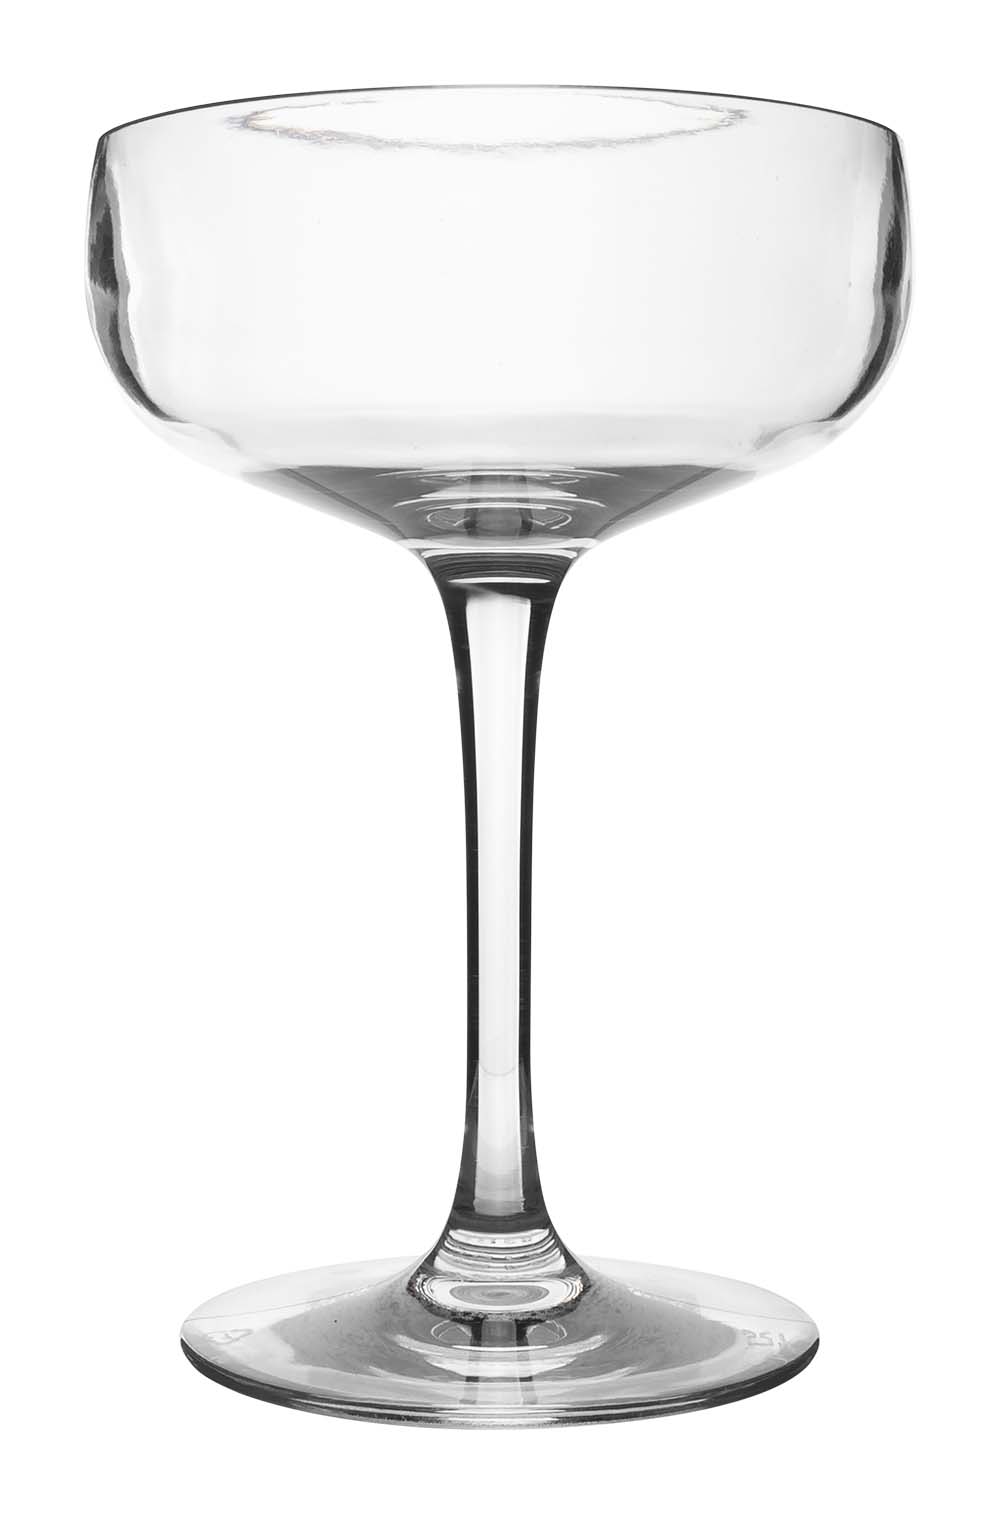 6101435 Een extra stevig en stijlvolle cocktailglas. Gemaakt van 100% polycarbonaat. Hierdoor is het glas vrijwel onbreekbaar, lichtgewicht en kraswerend. Ook is dit glas vaatwasmachinebestendig.